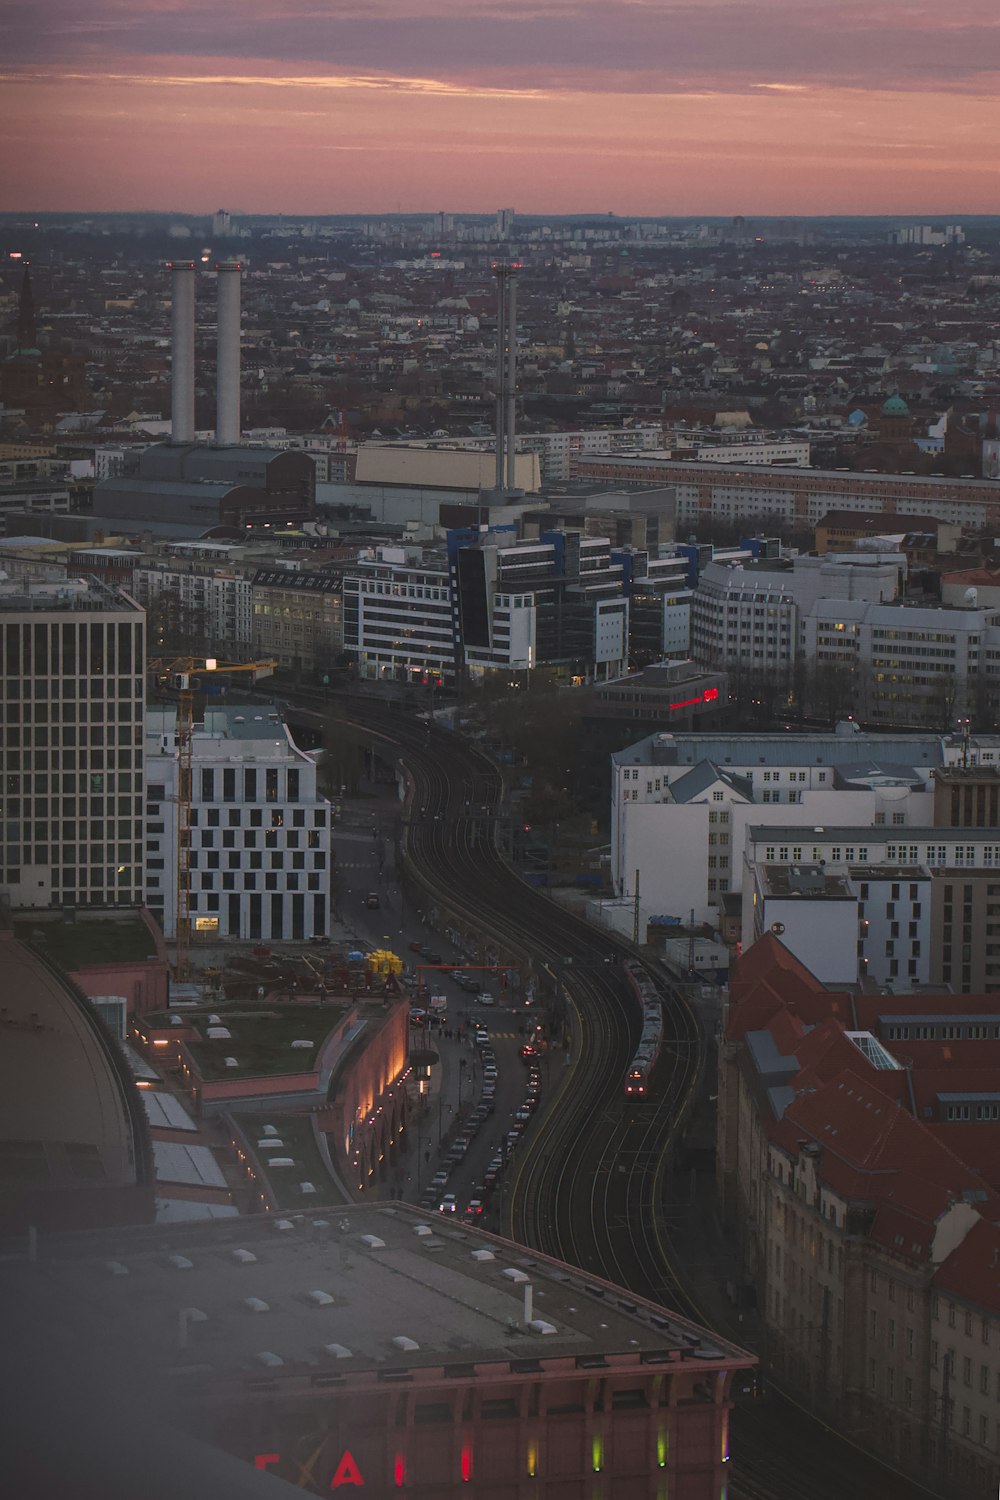 Photographie aérienne de la ville pendant l’heure dorée